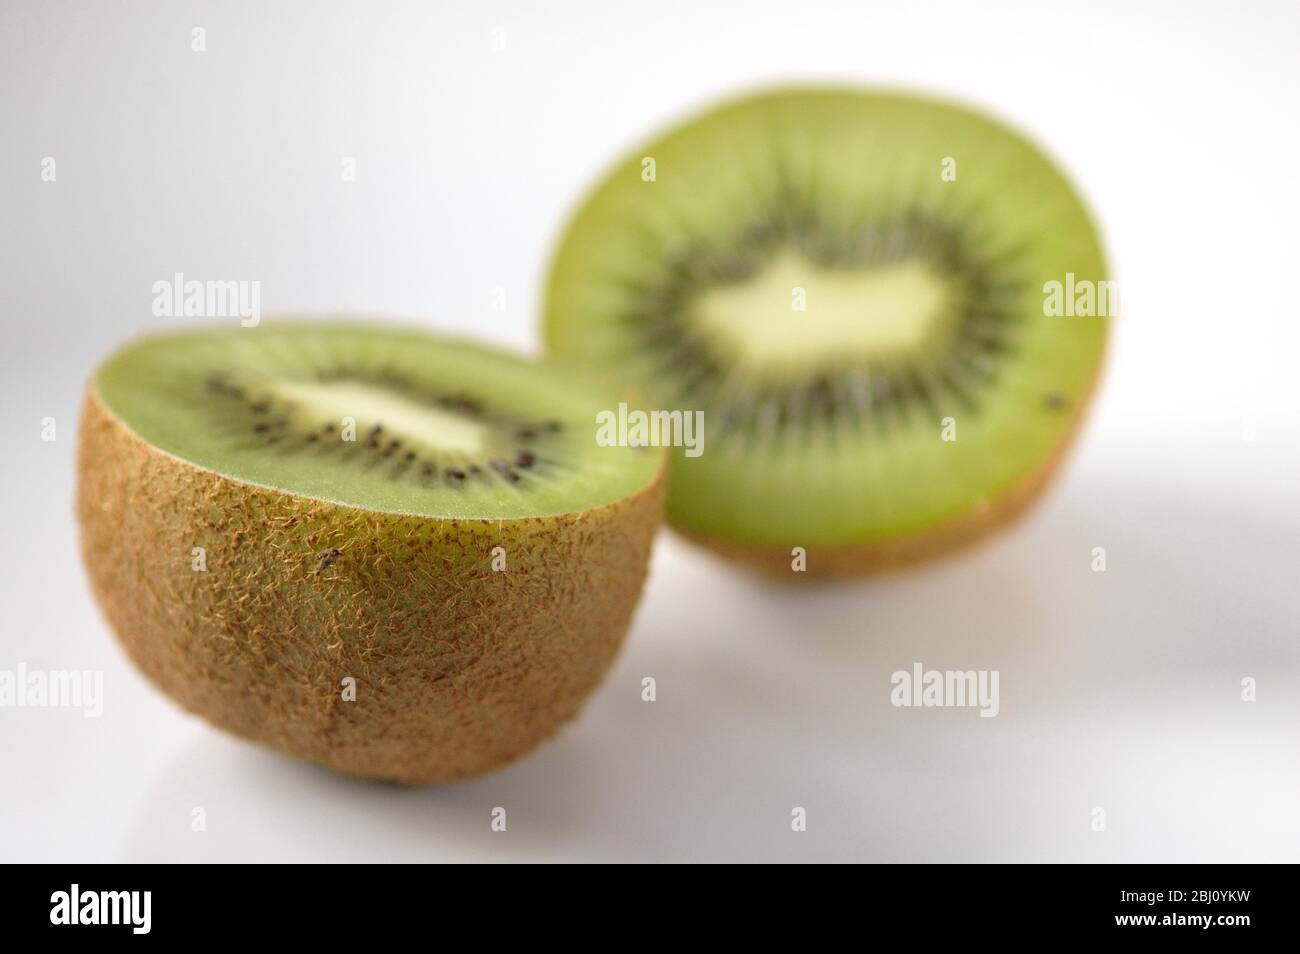 Kiwi-Frucht halbiert, um innere Textur und Struktur auf weißer Keramik-Oberfläche zu zeigen - Stockfoto